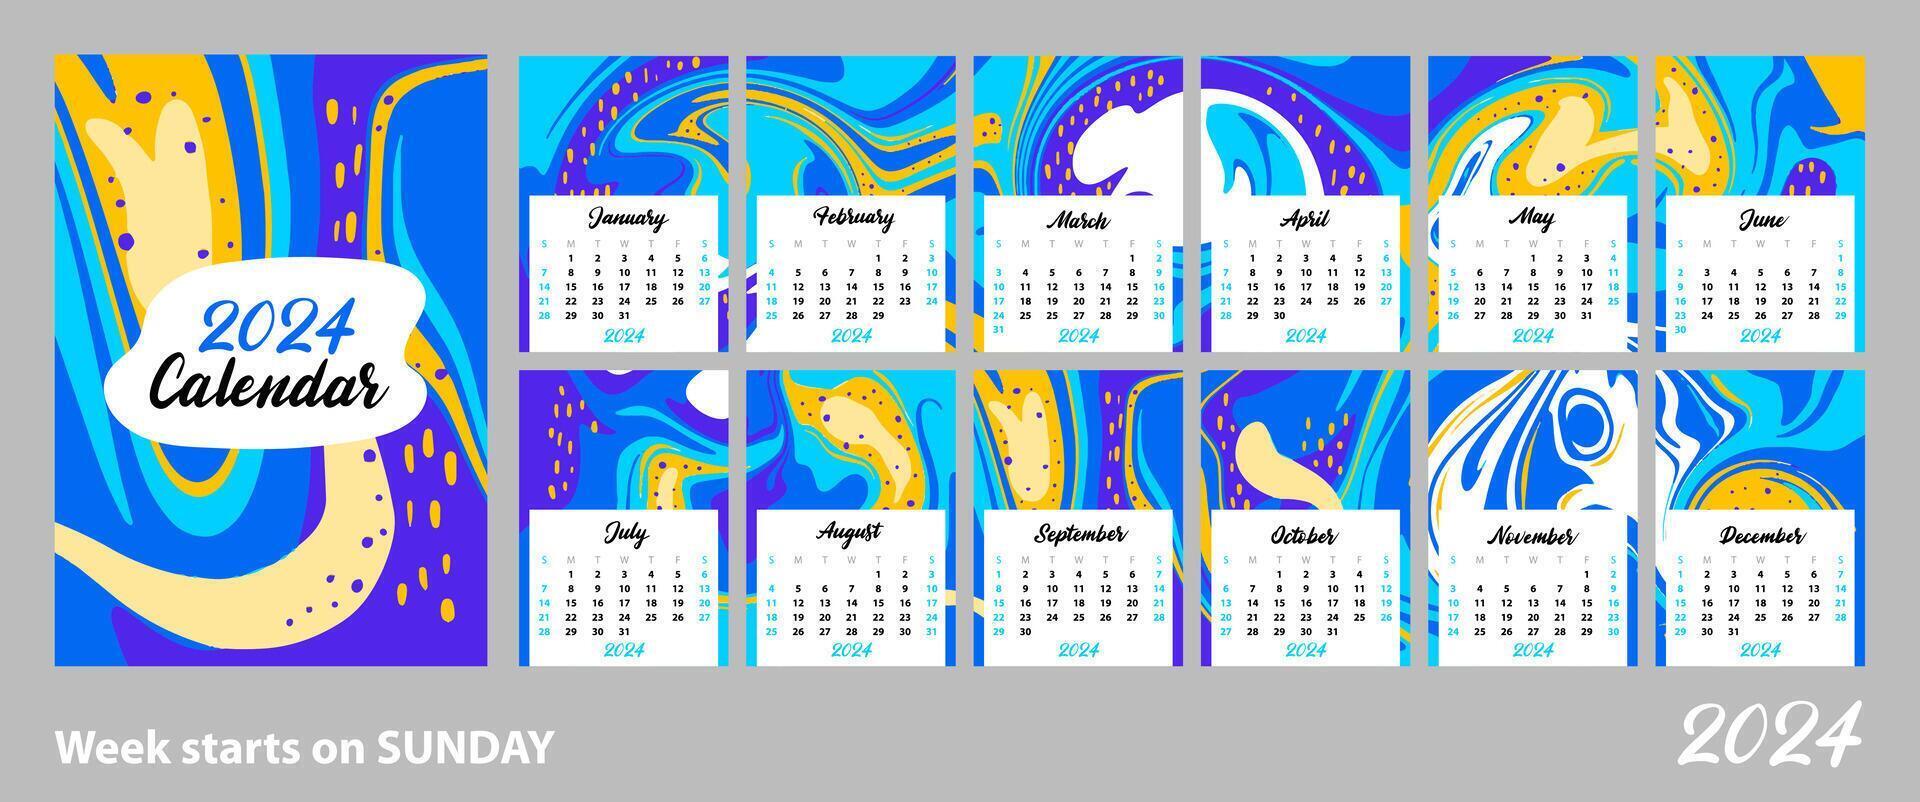 abstrakt kalender av 2024. ljus rosa fläckar och vågor. de vecka börjar på söndag. layout för utskrift a4, a5 vektor